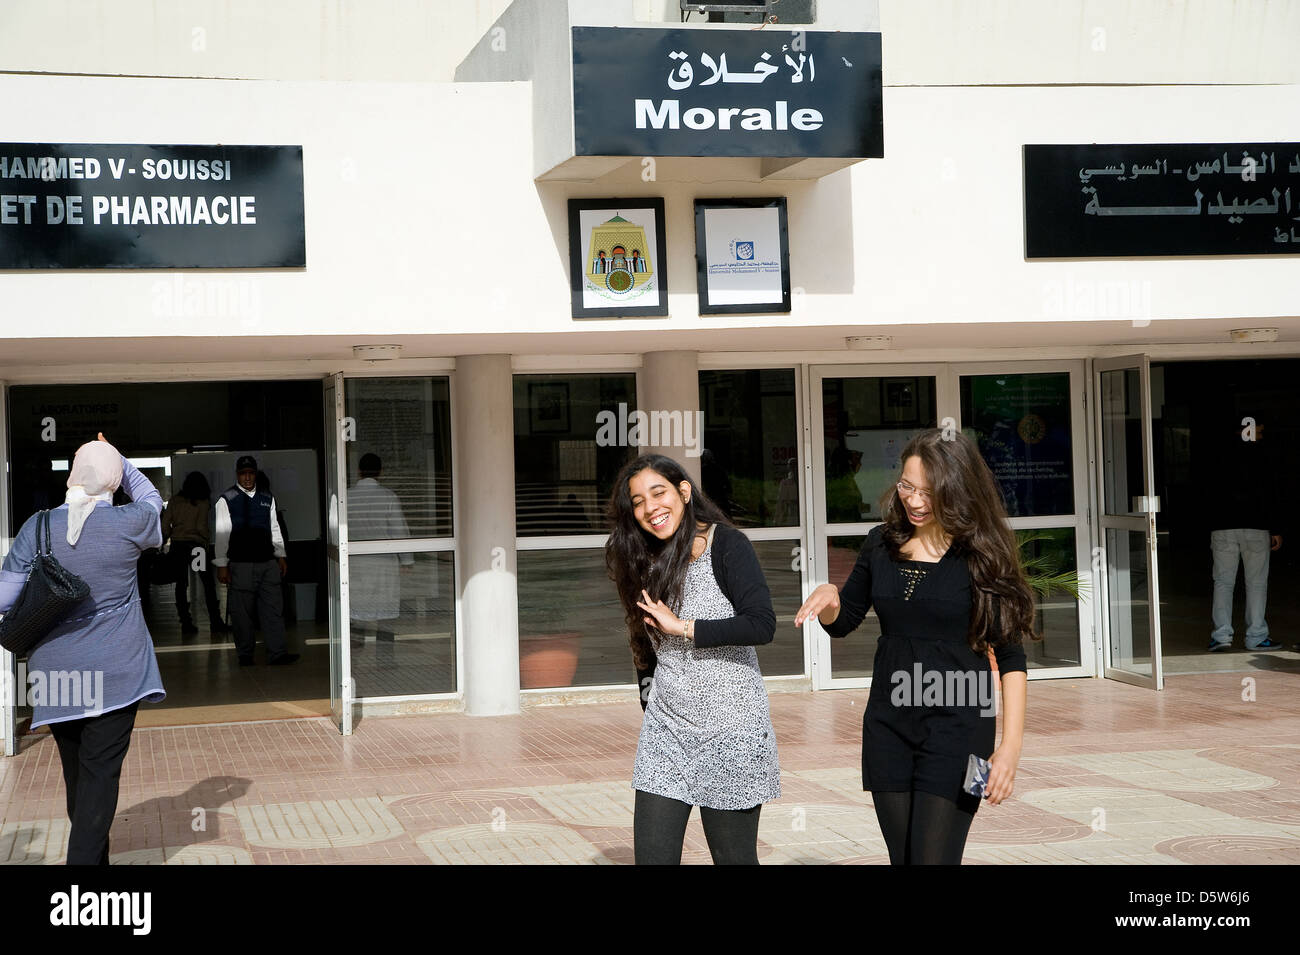 Un nouveau programme de mentorat a débuté à l'Université Mohammed V Souissi où les étudiantes peuvent obtenir des conseils pour sa vie professionnelle Banque D'Images